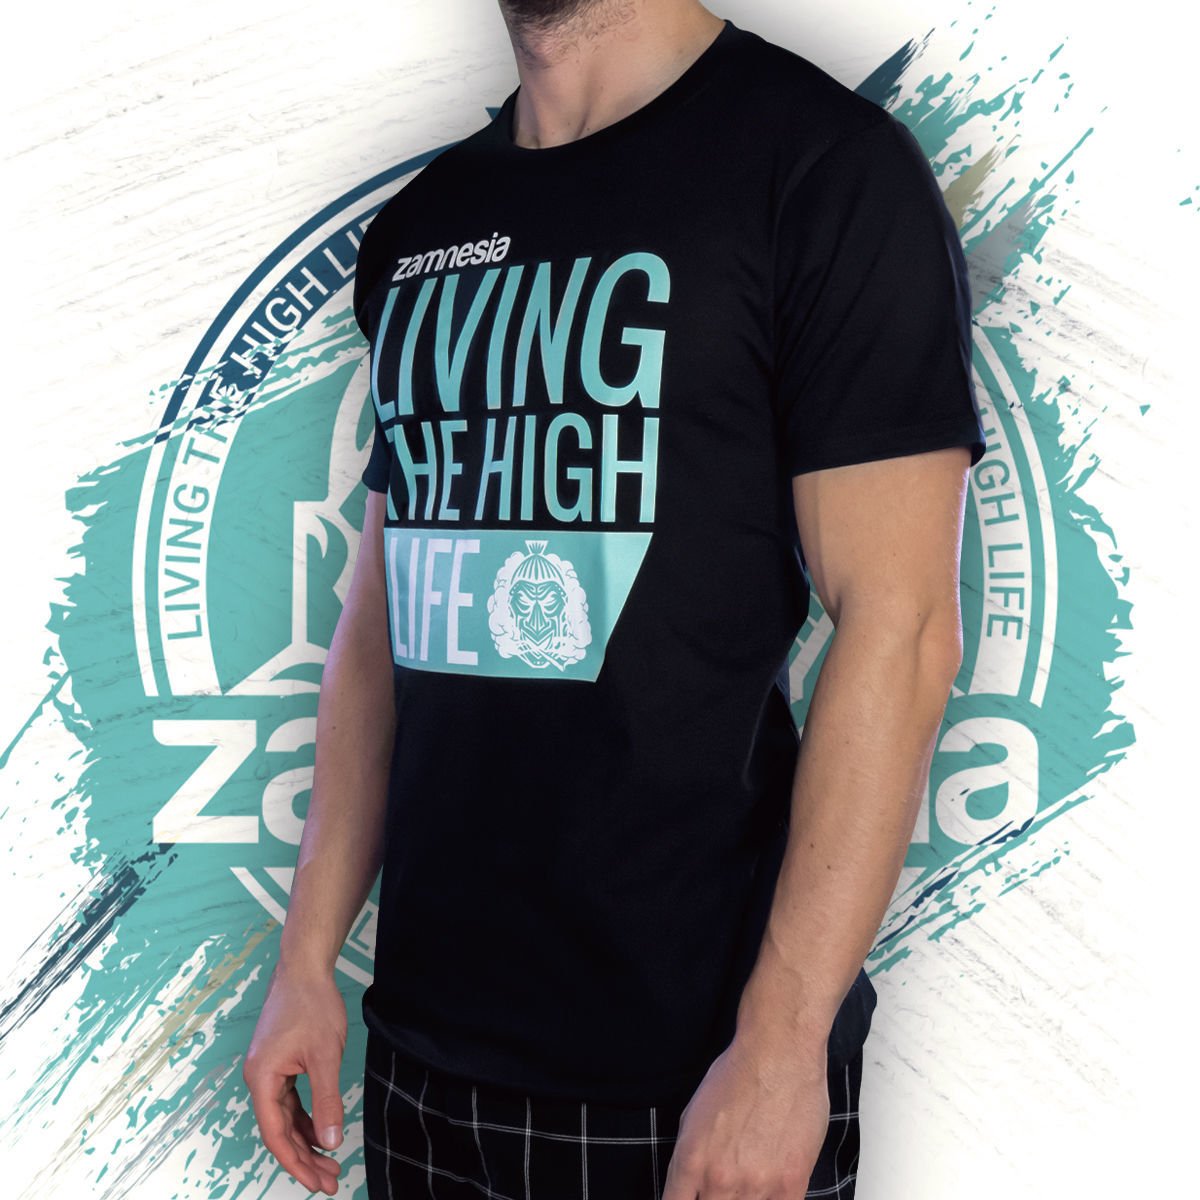 overloop schildpad marionet High-Life T-shirt | Zamnesia | Merchandise - Zamnesia